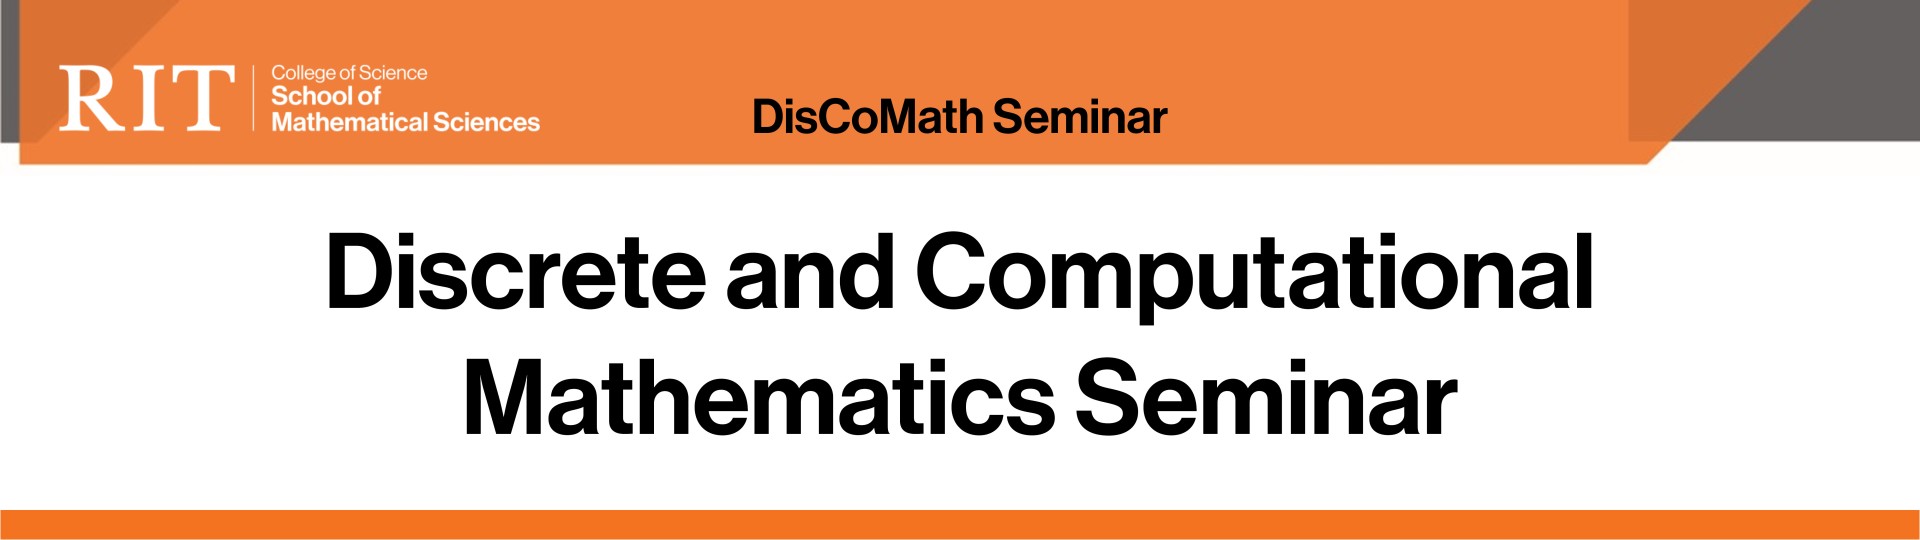 Discrete & Computational Math Seminar (DisCoMath)